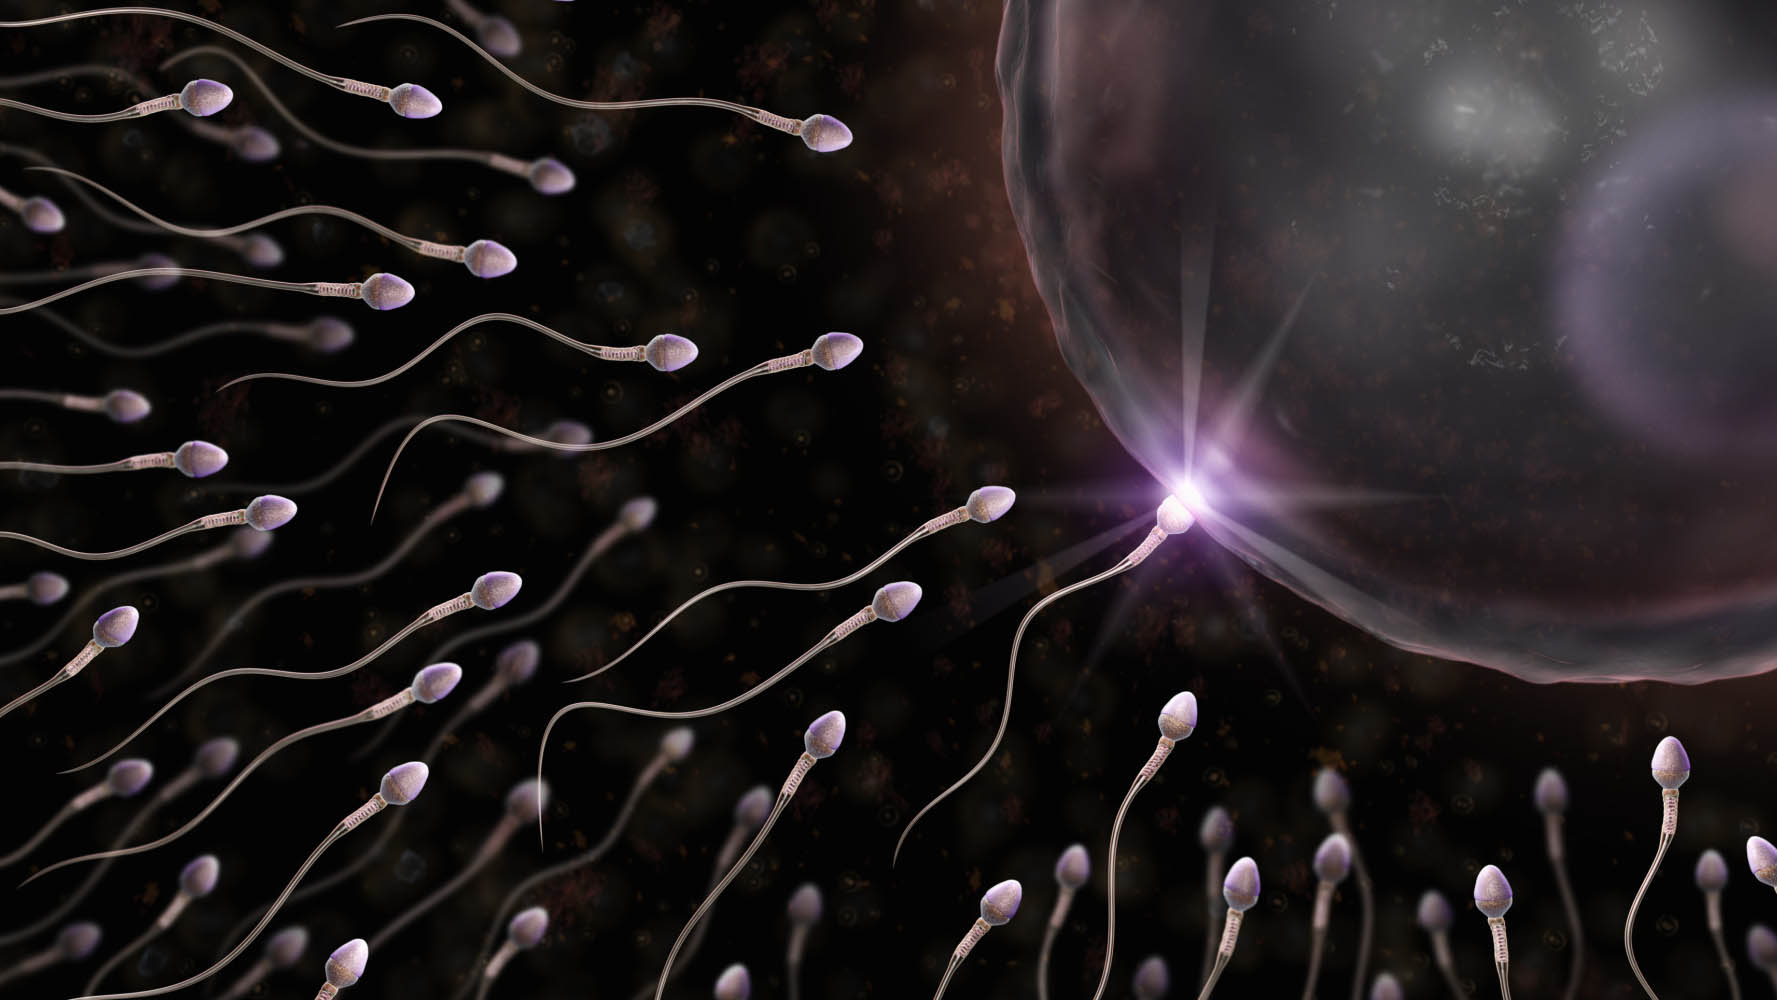 Un estudio comprobó que las células madre que producen los espermatozoides pueden ser extraídas y congeladas